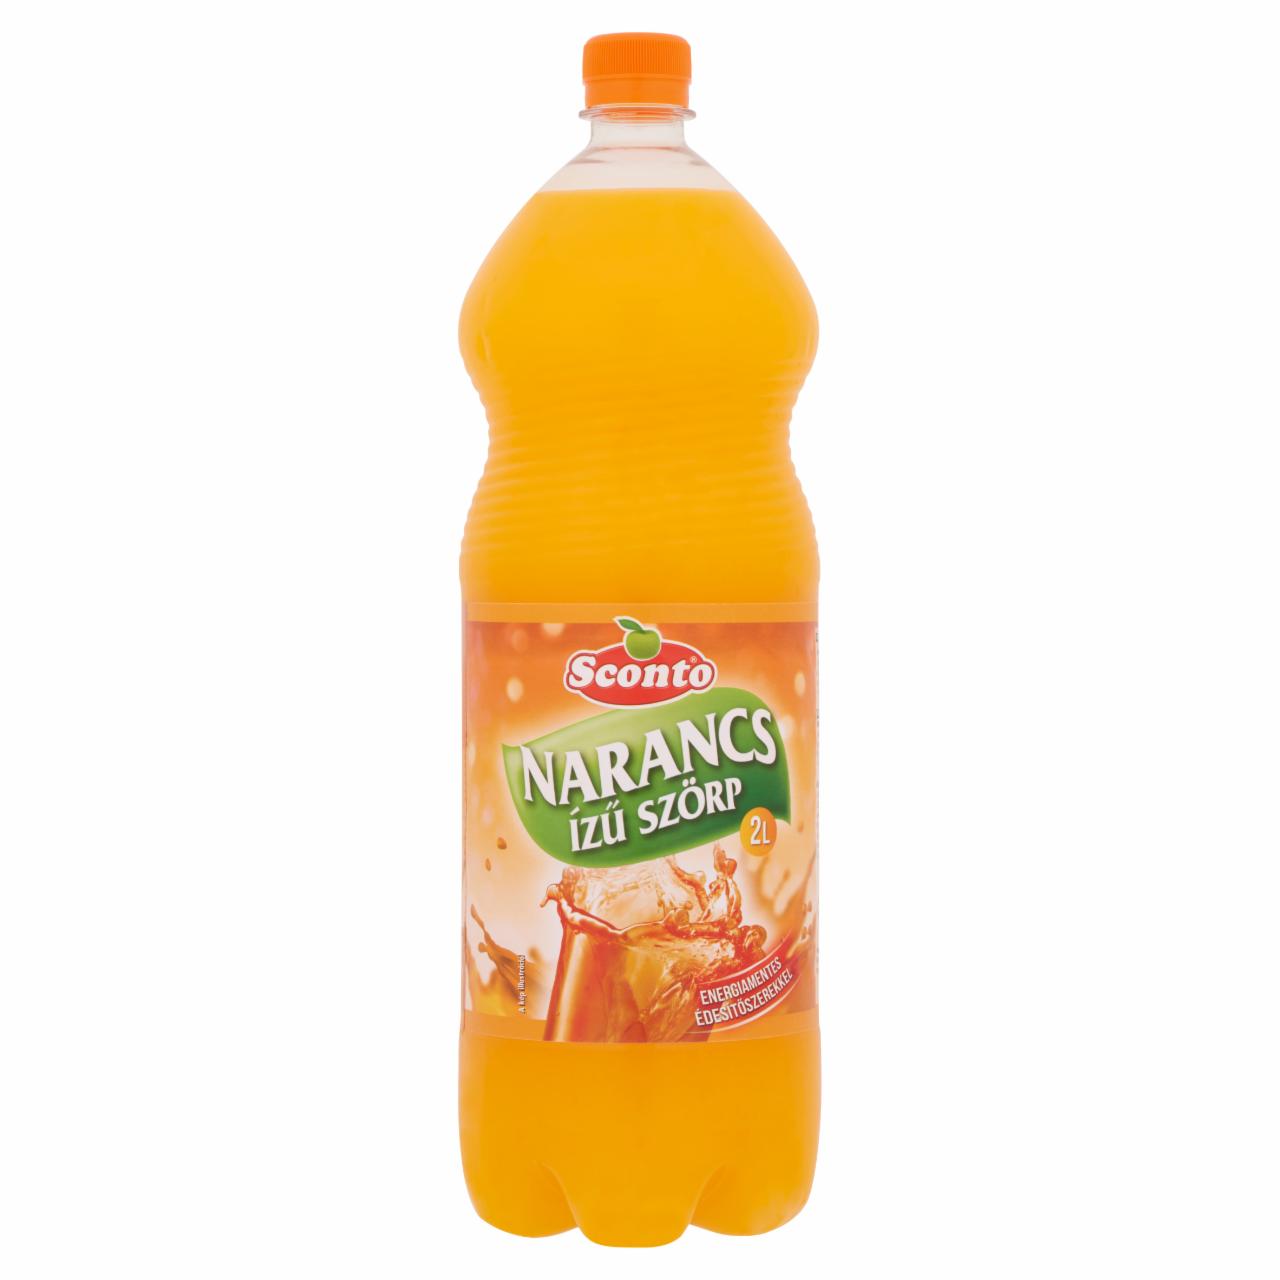 Képek - Sconto energiamentes narancs ízű szörp édesítőszerekkel 2 l